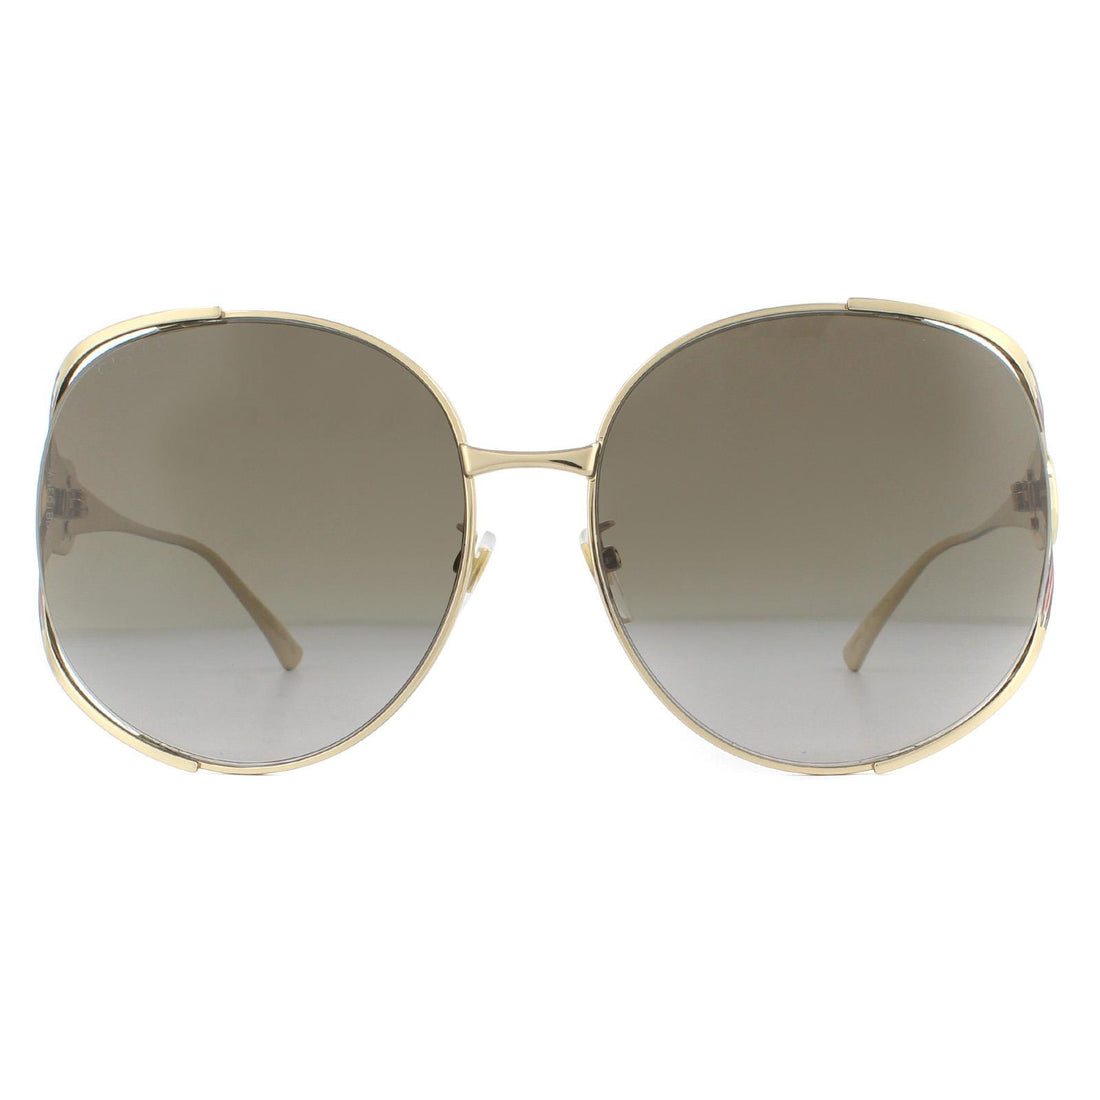 Gucci GG0225S Sunglasses Gold / Brown Gradient